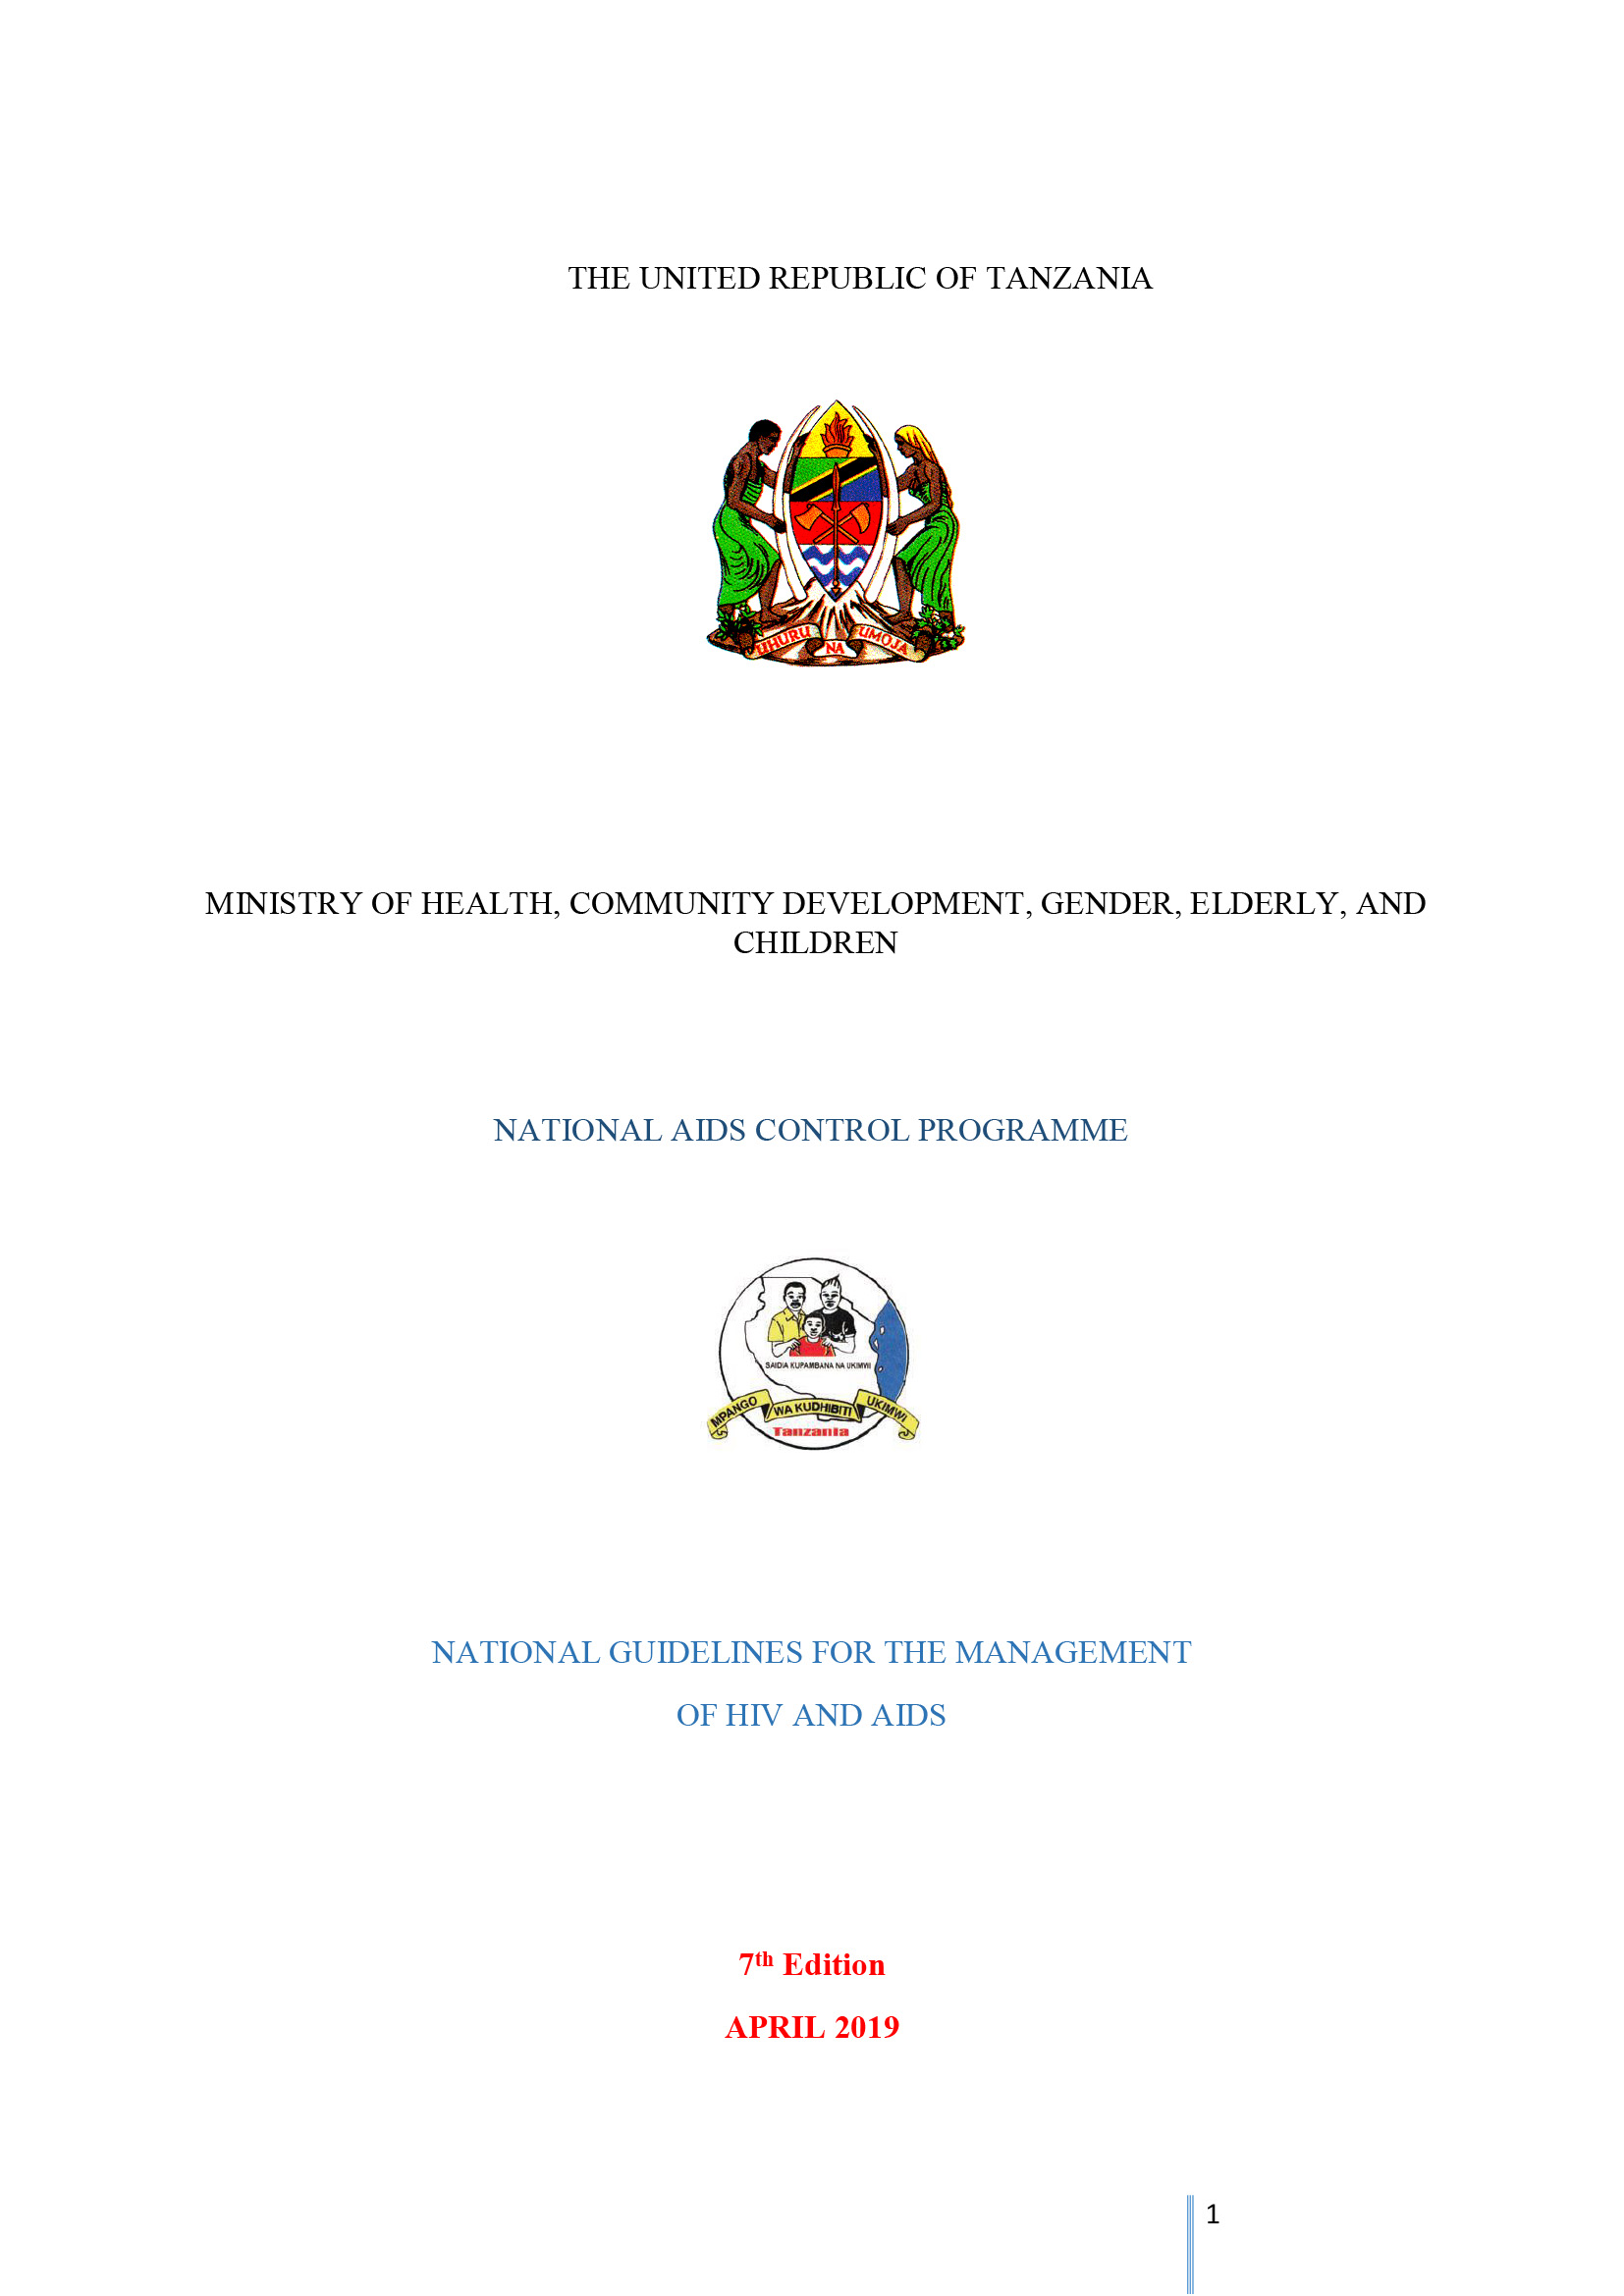 Directrices nacionales de Tanzania para la gestión del VIH y el SIDA - portada